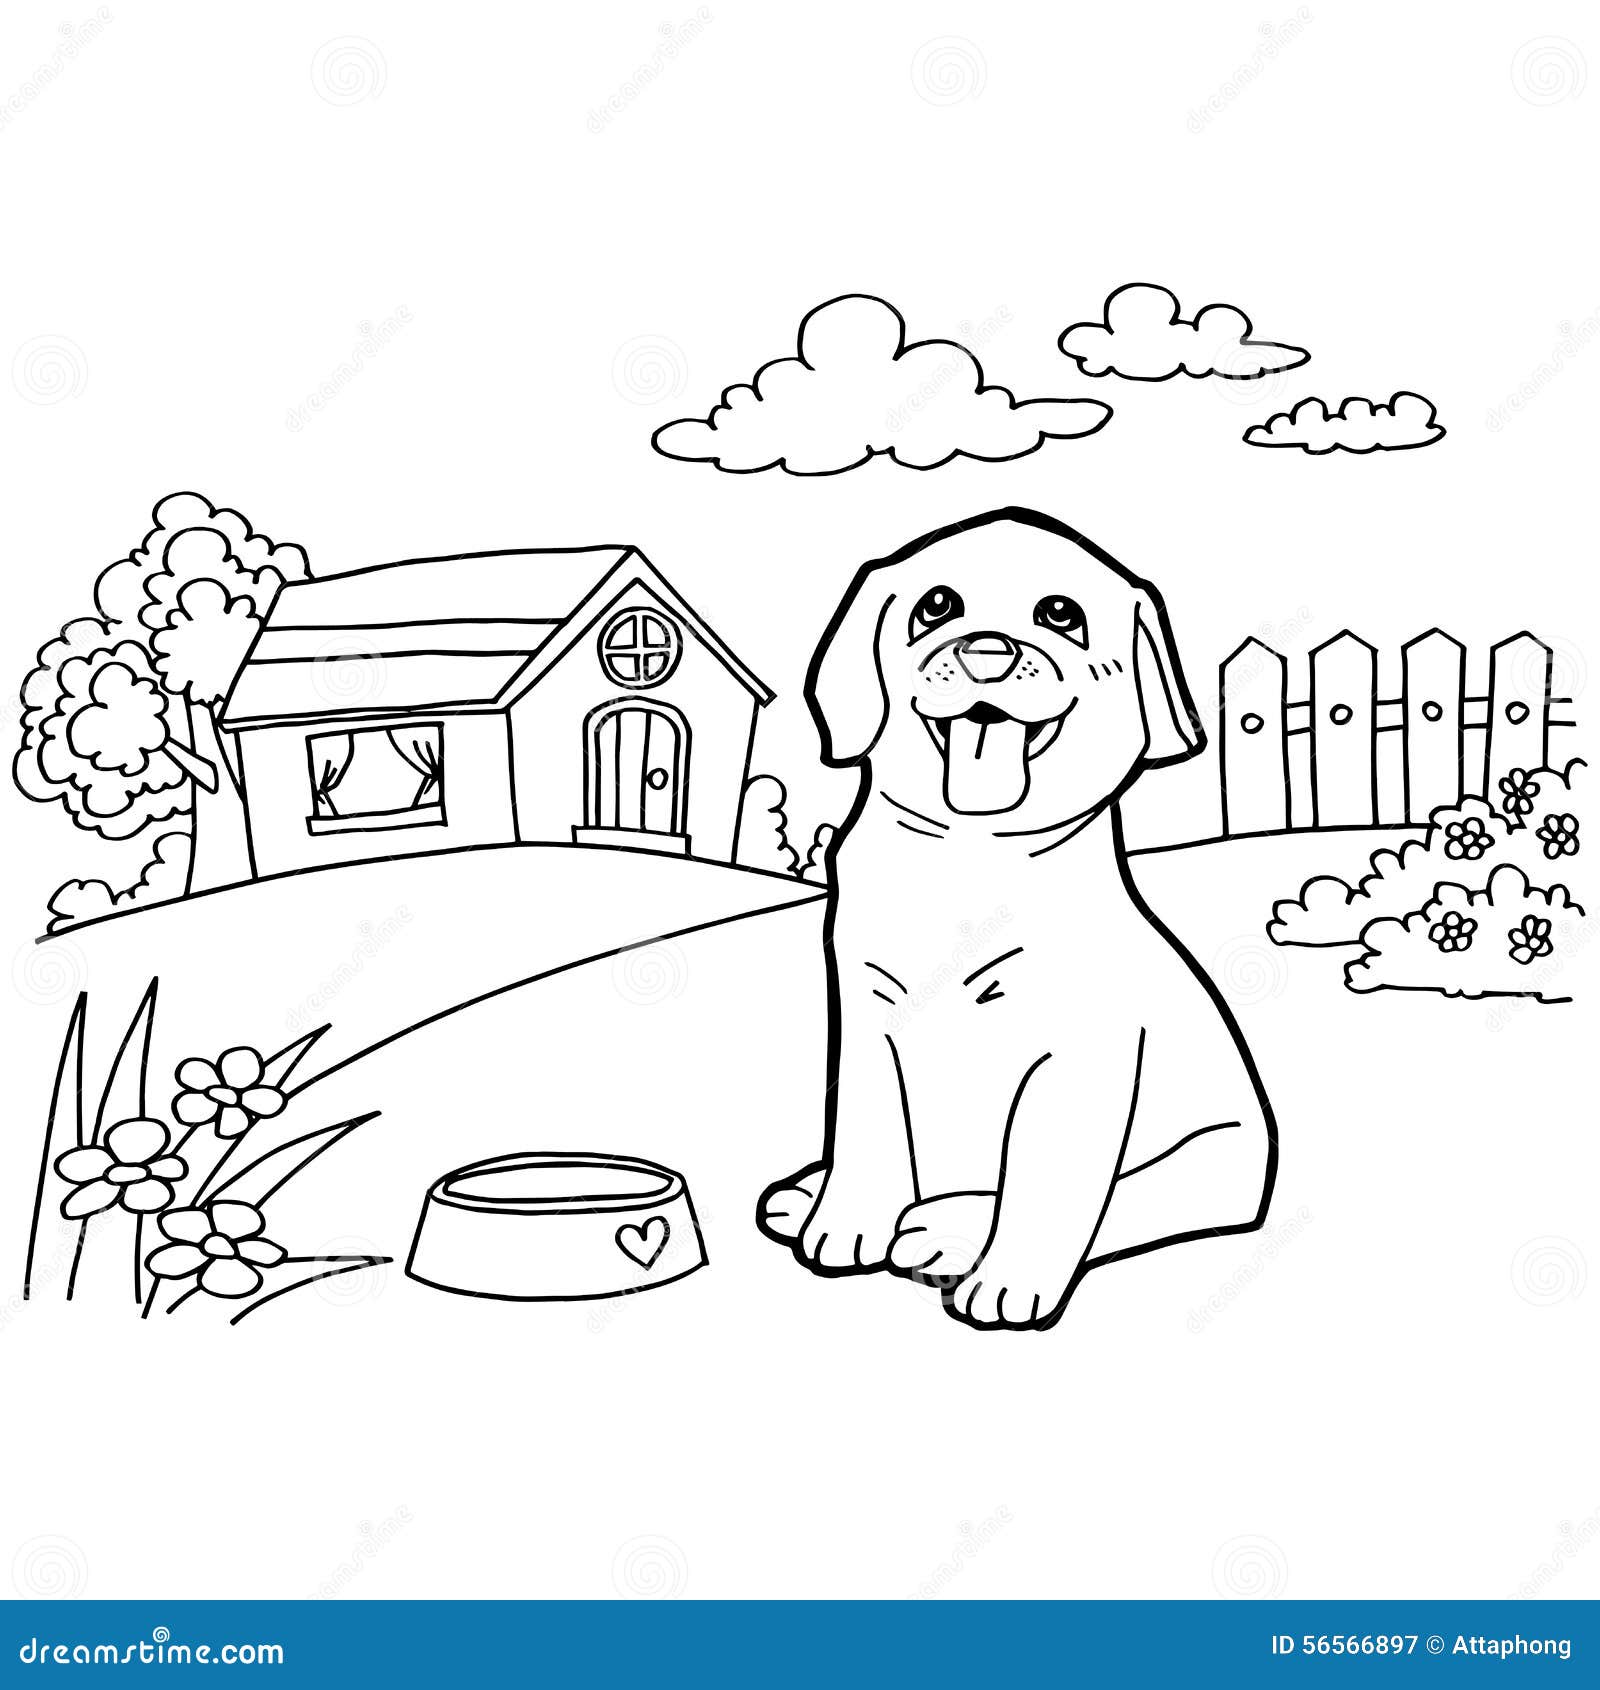 Desenho de Cão casa para Colorir - Colorir.com